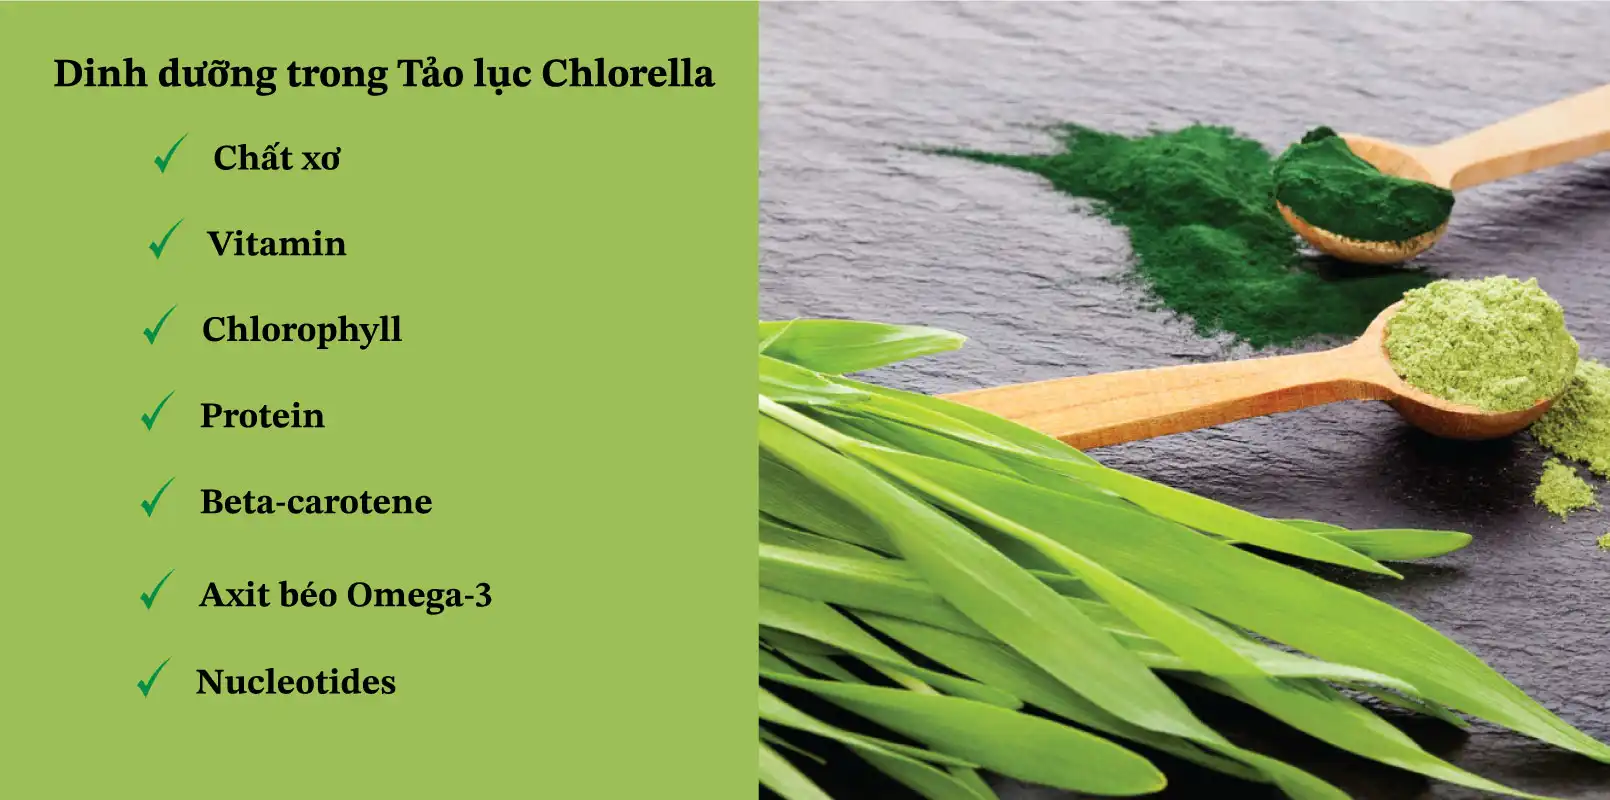 Thành phần của Tảo lục Chlorella